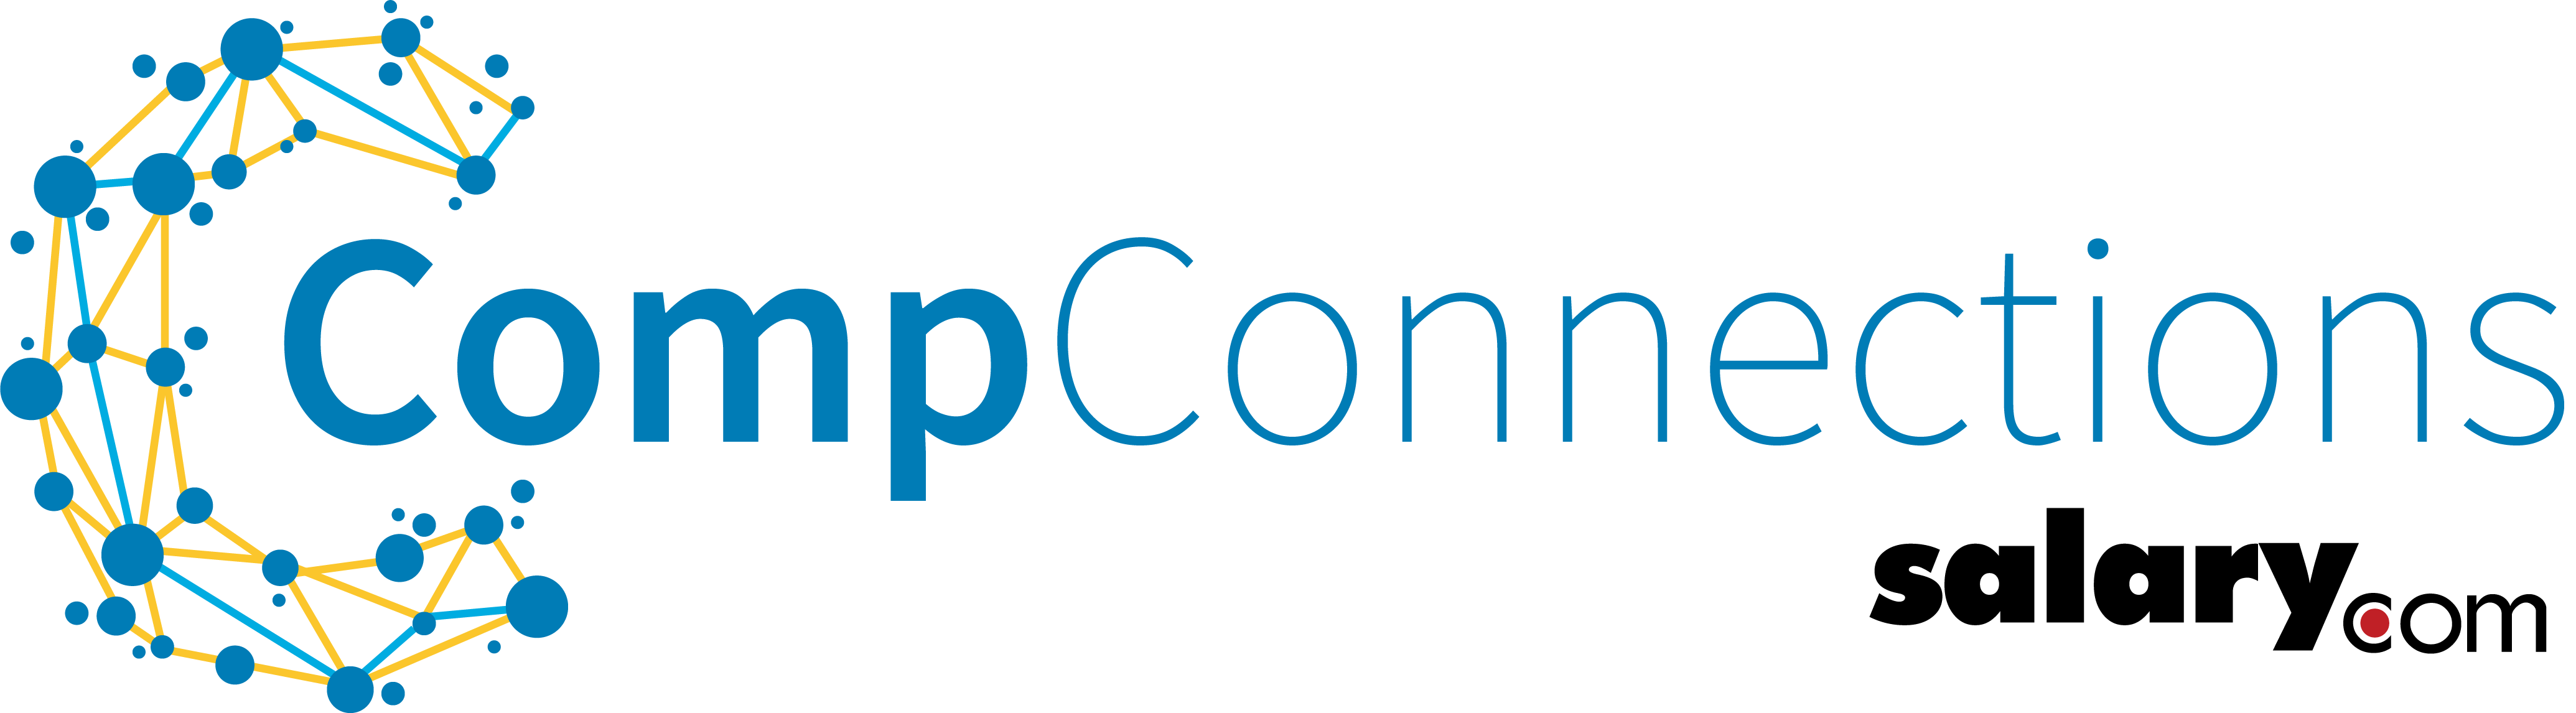 Salary.com Logo - Salary.com Enhances CompConnections Community with New Events